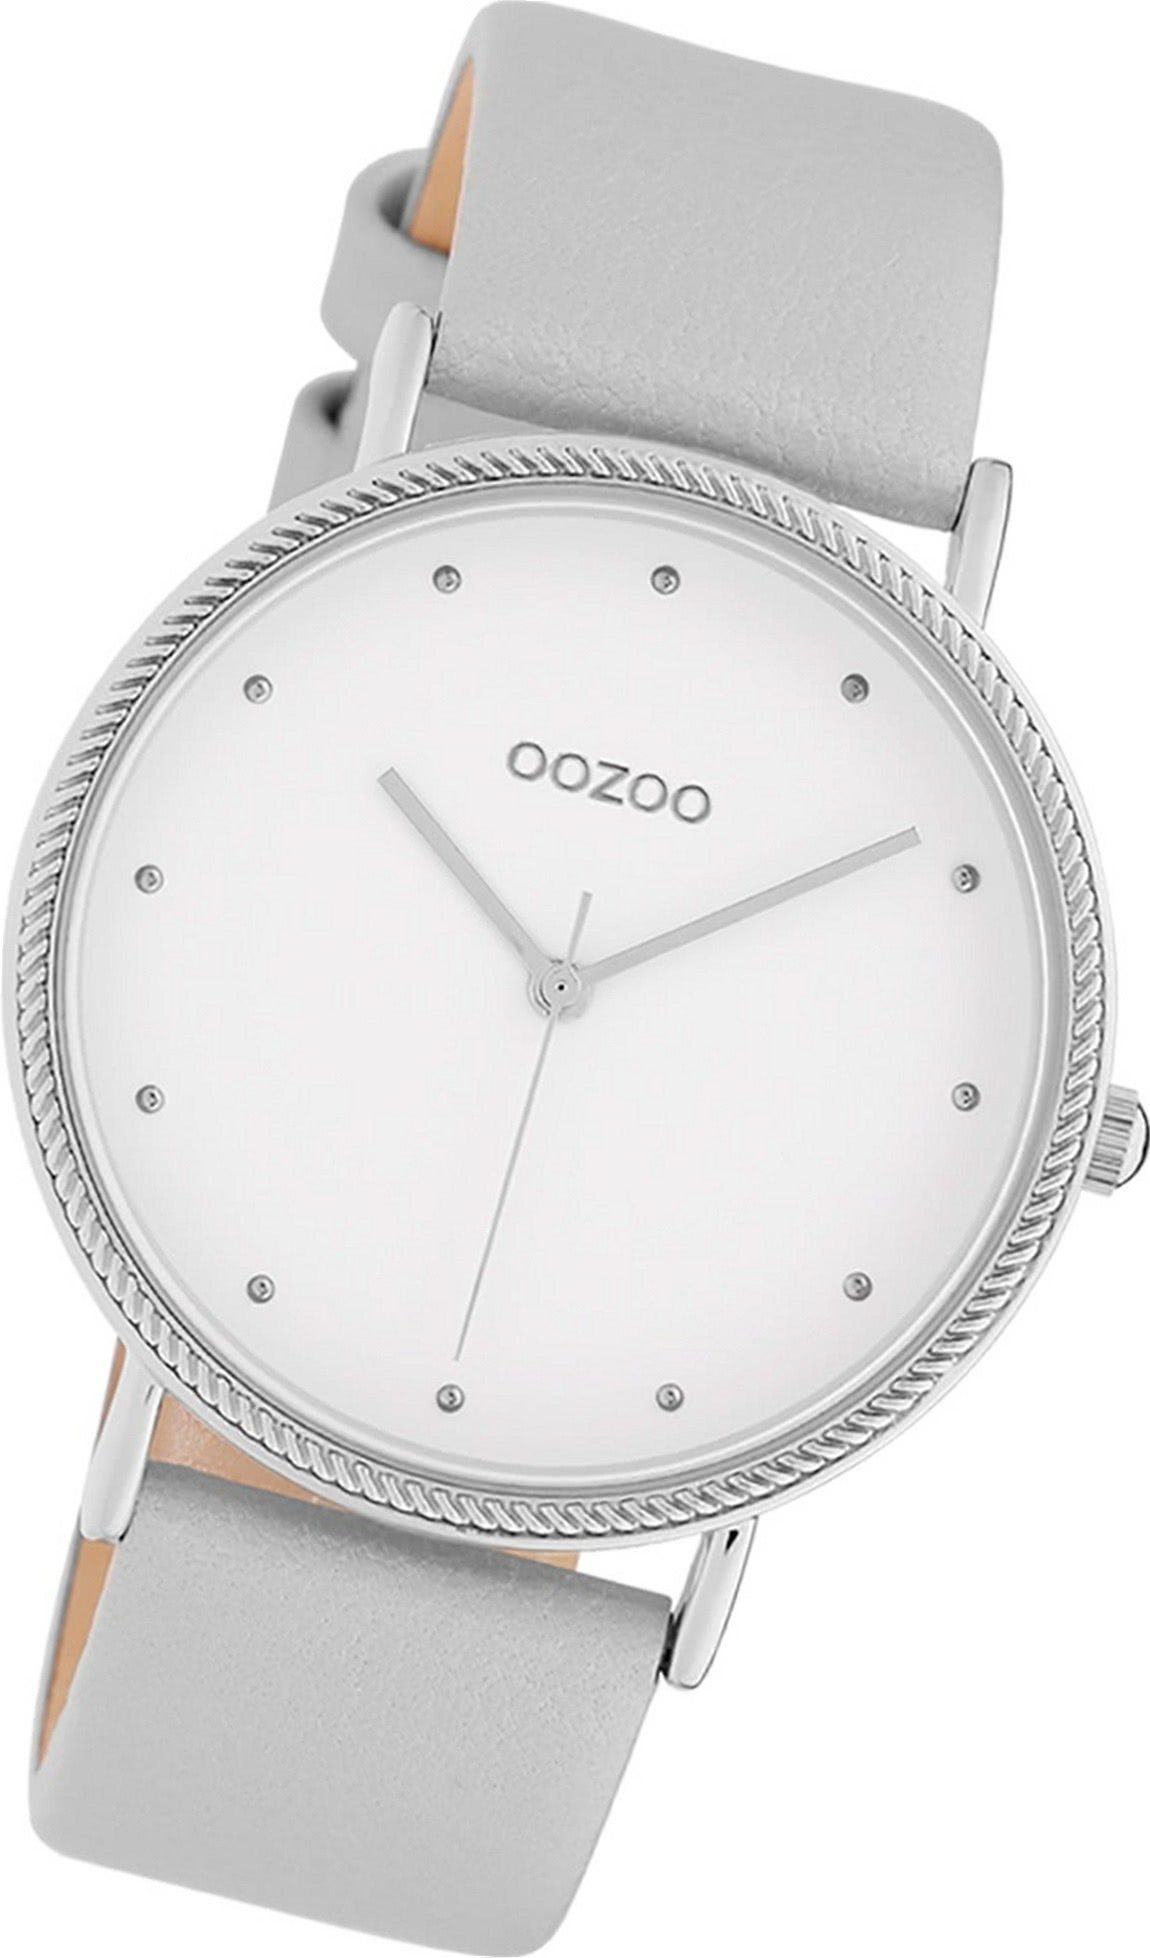 OOZOO Quarzuhr Oozoo Leder Damen Uhr C10415 Analog, Damenuhr Lederarmband silber, grau, rundes Gehäuse, groß (ca. 40mm)